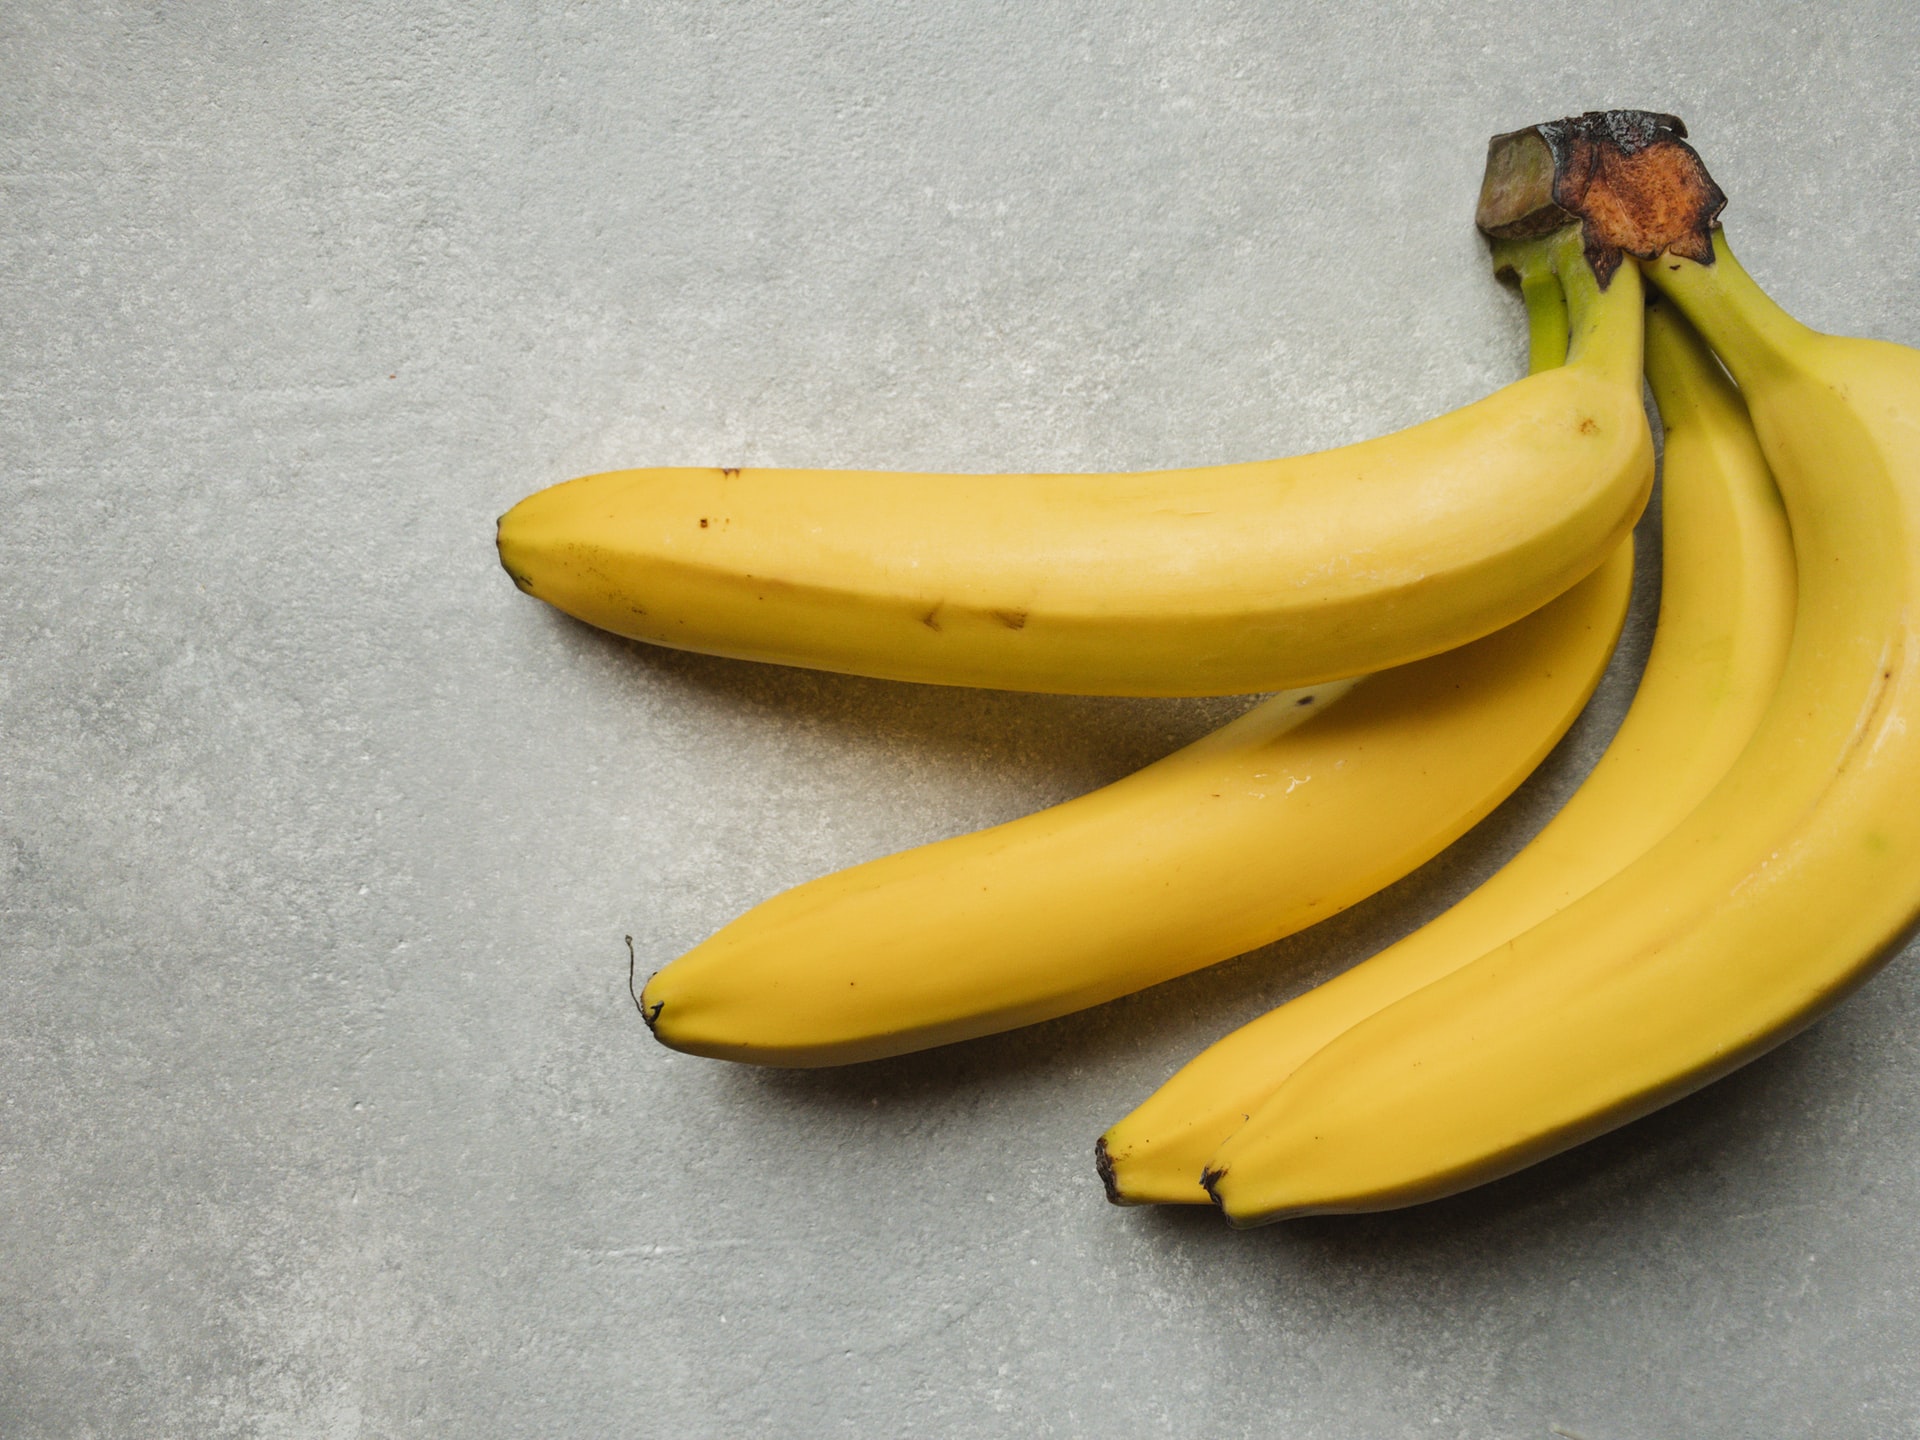 El plátano, la fruta perfecta para los deportistas